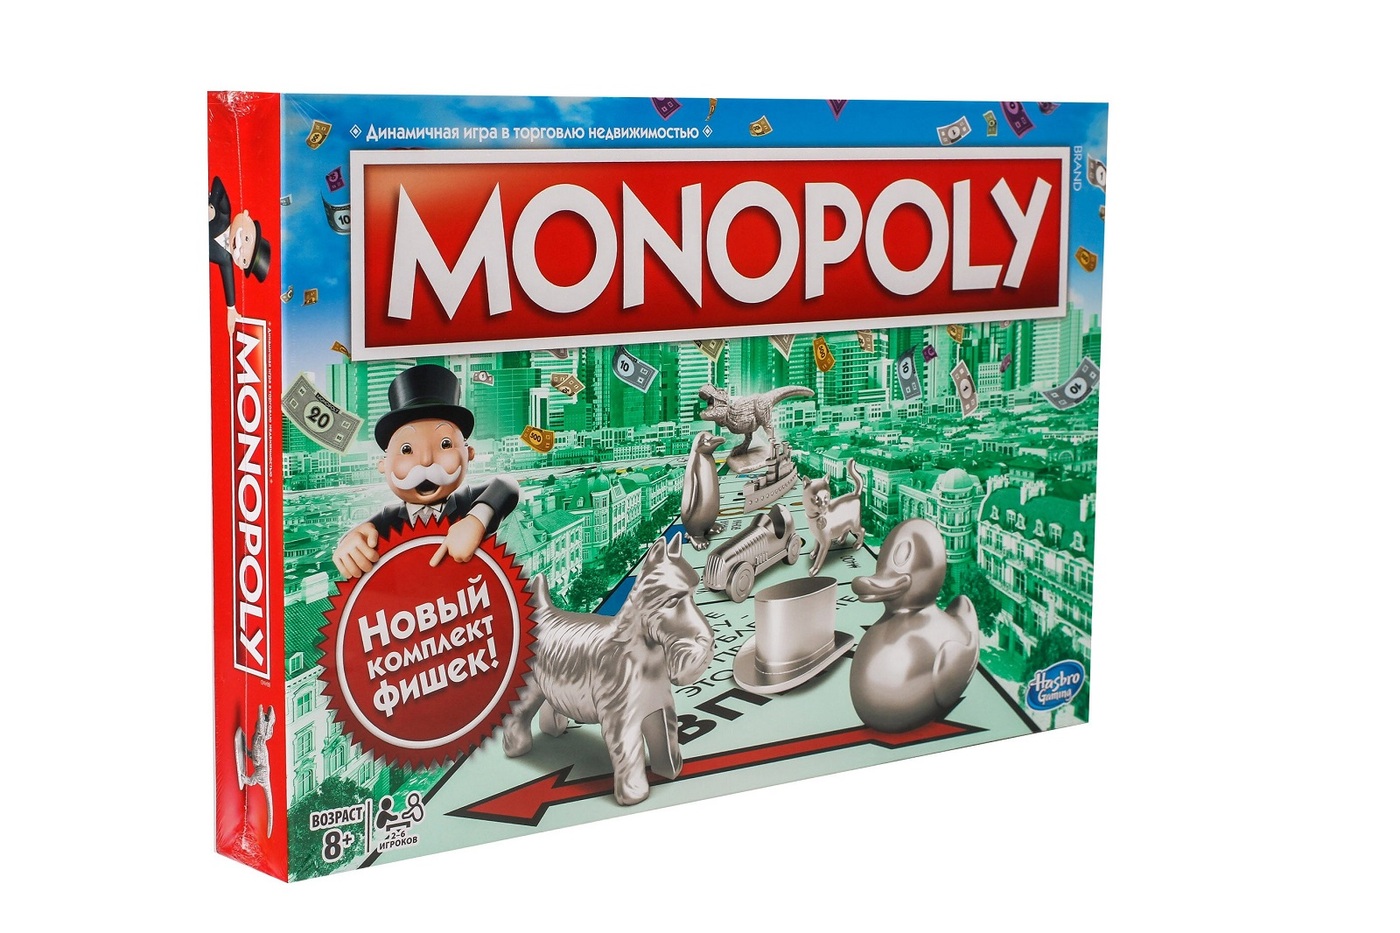 Игра монополия hasbro. Настольная игра Monopoly классическая обновленная c1009. Настольная игра Hasbro Monopoly. Монополия классическая Хасбро. Монополия классическая обновленная c1009121.